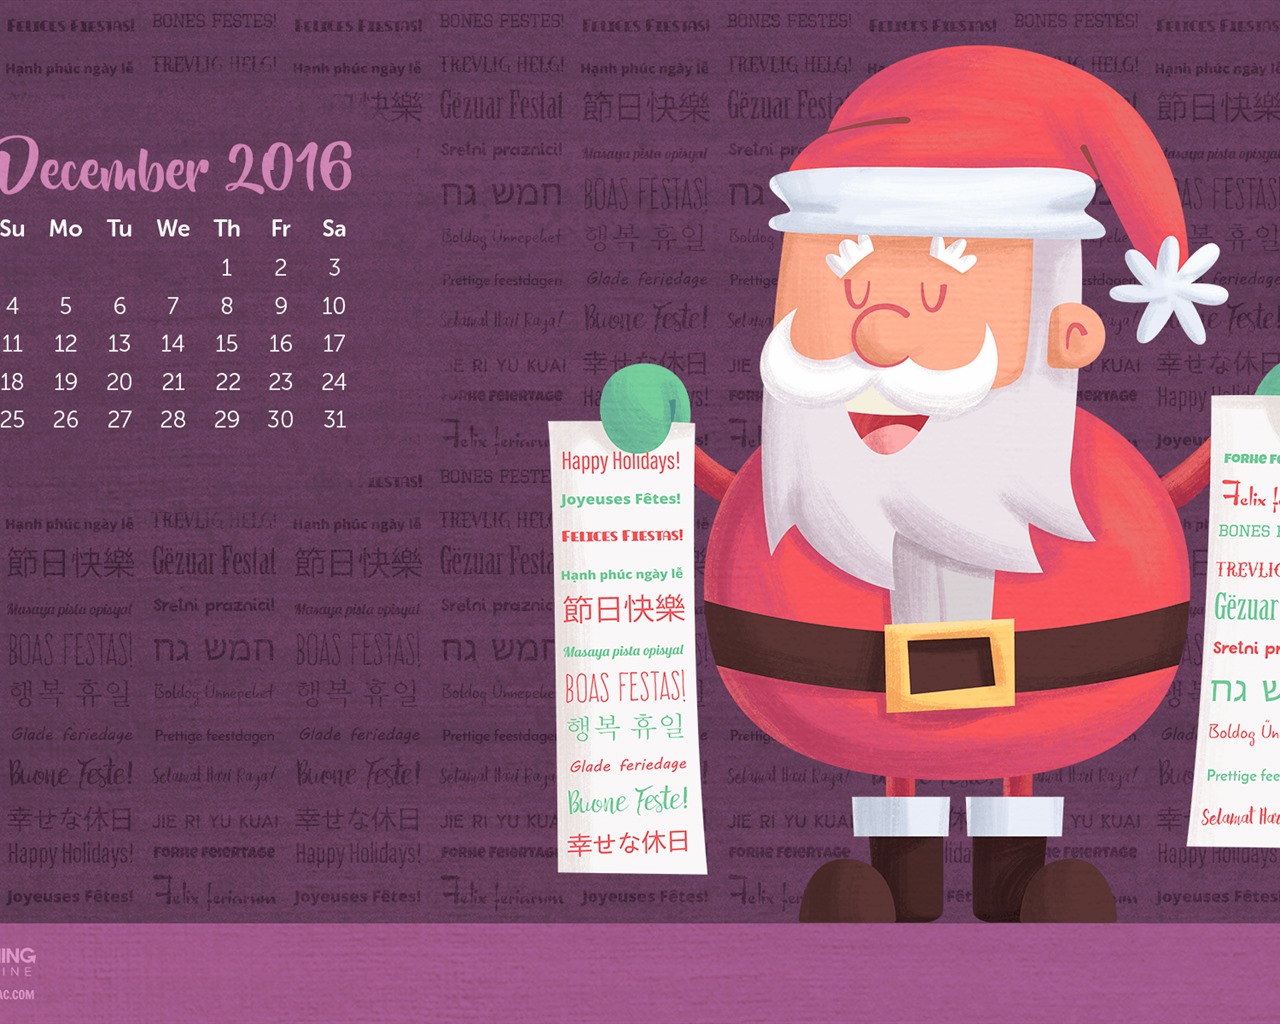 Décembre 2016 Fond d'écran calendrier thème Noël (1) #24 - 1280x1024